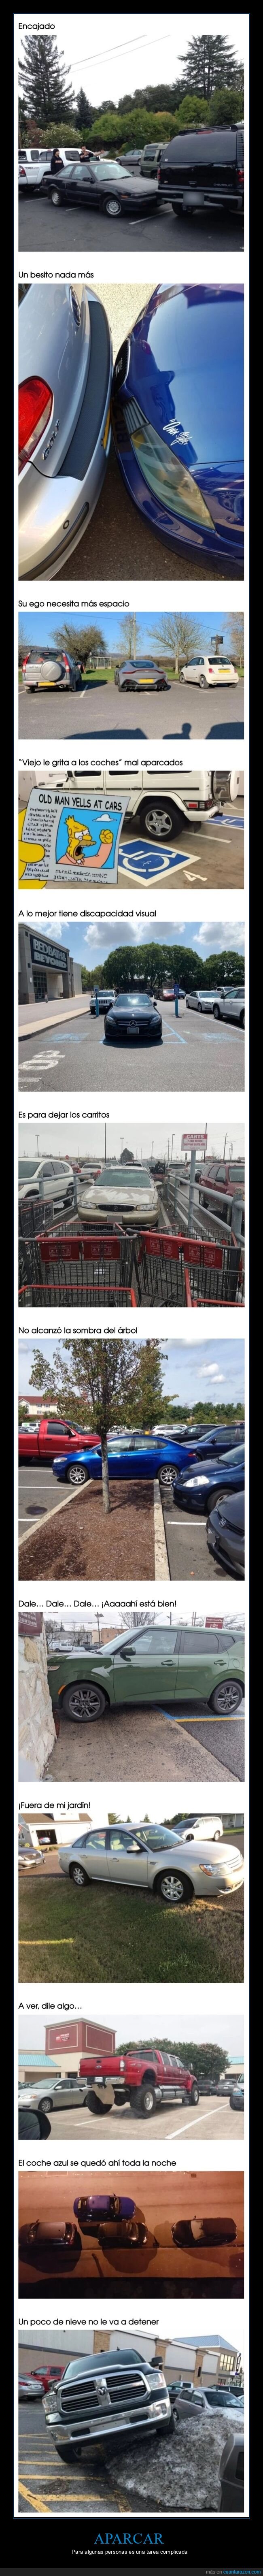 coches,aparcar,fails